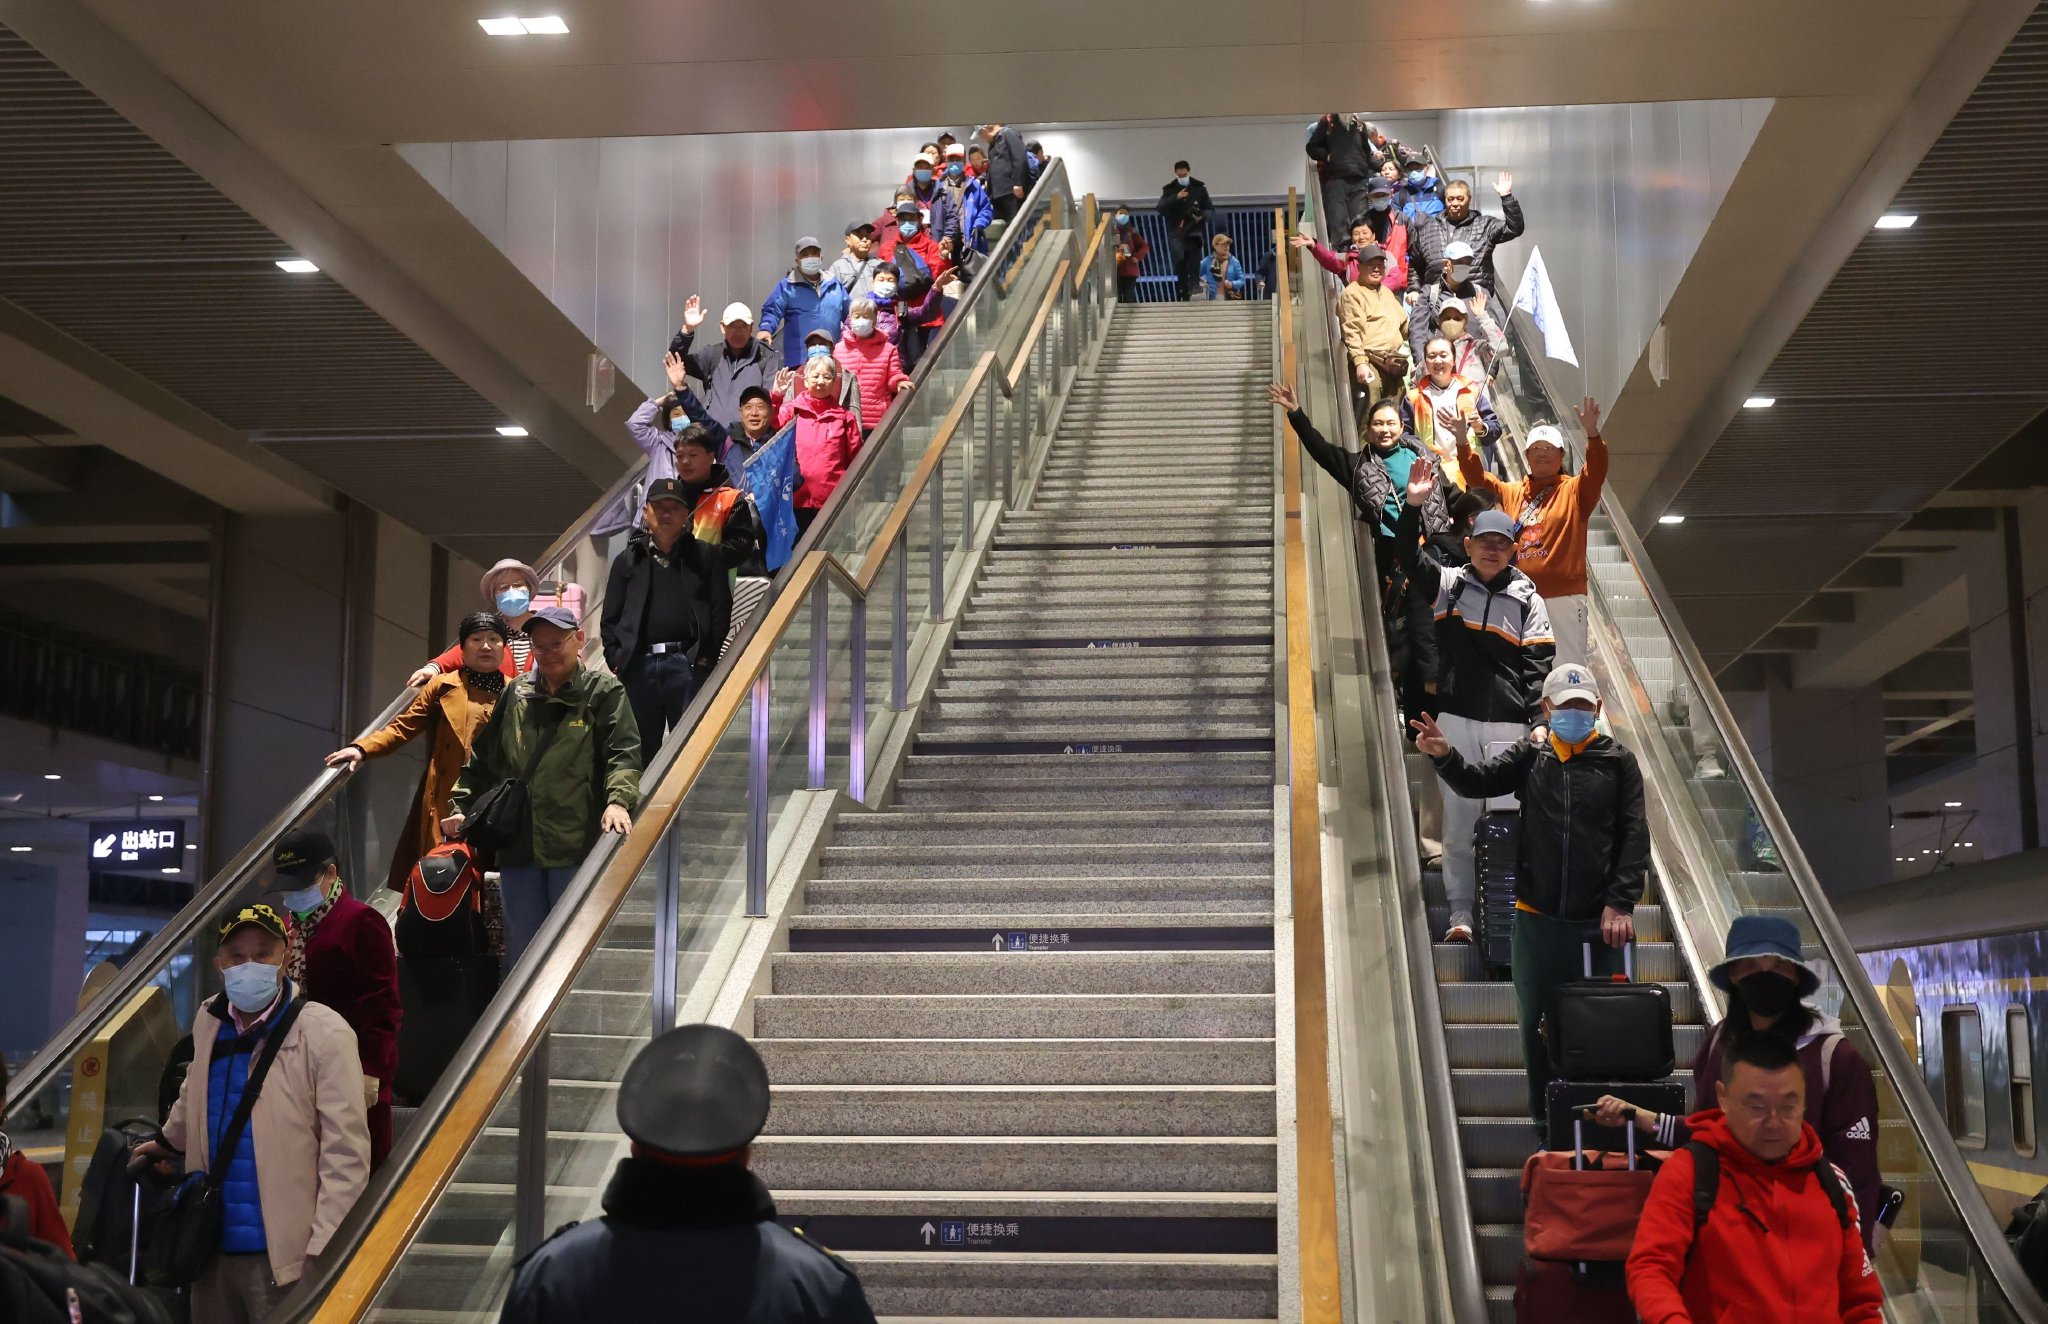 Y427次旅遊專列搭載有四百餘名旅客。圖為旅客乘電梯前往站台。  新京報記者 王貴彬 攝